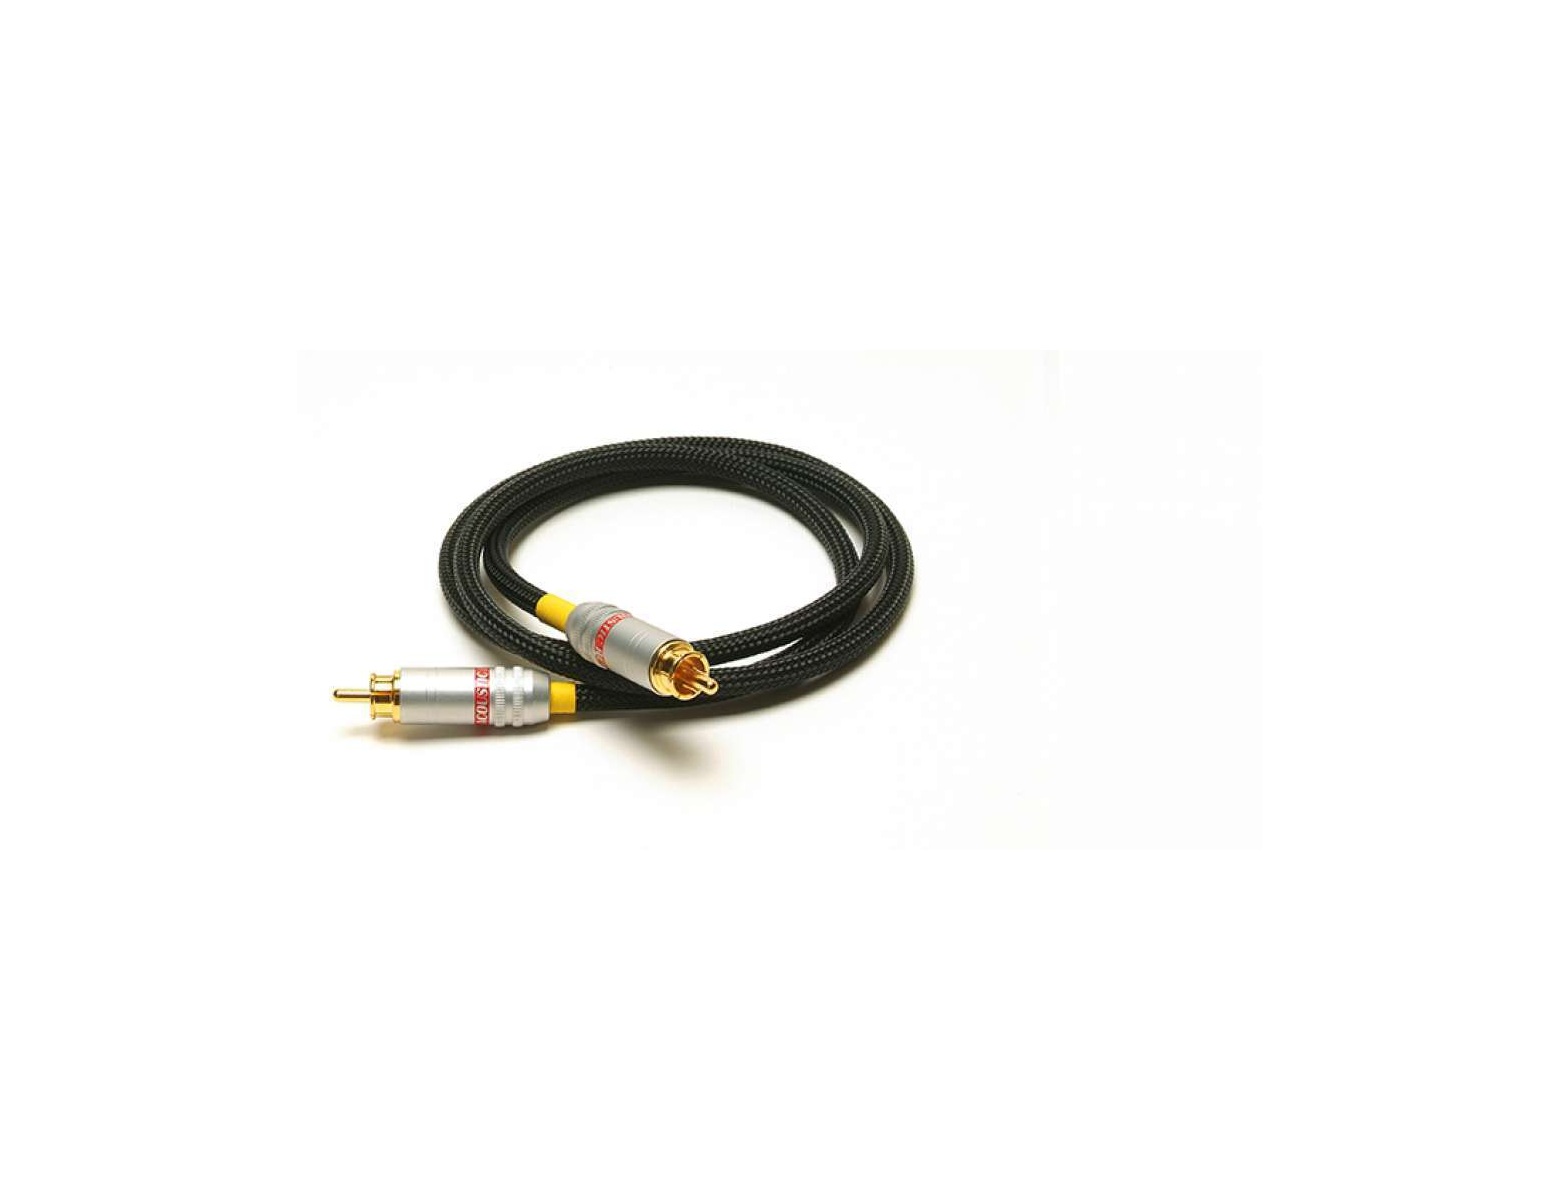 Acoustic Revive DIGITAL-1.0R TripleC-FM Digital Coaxial Cable